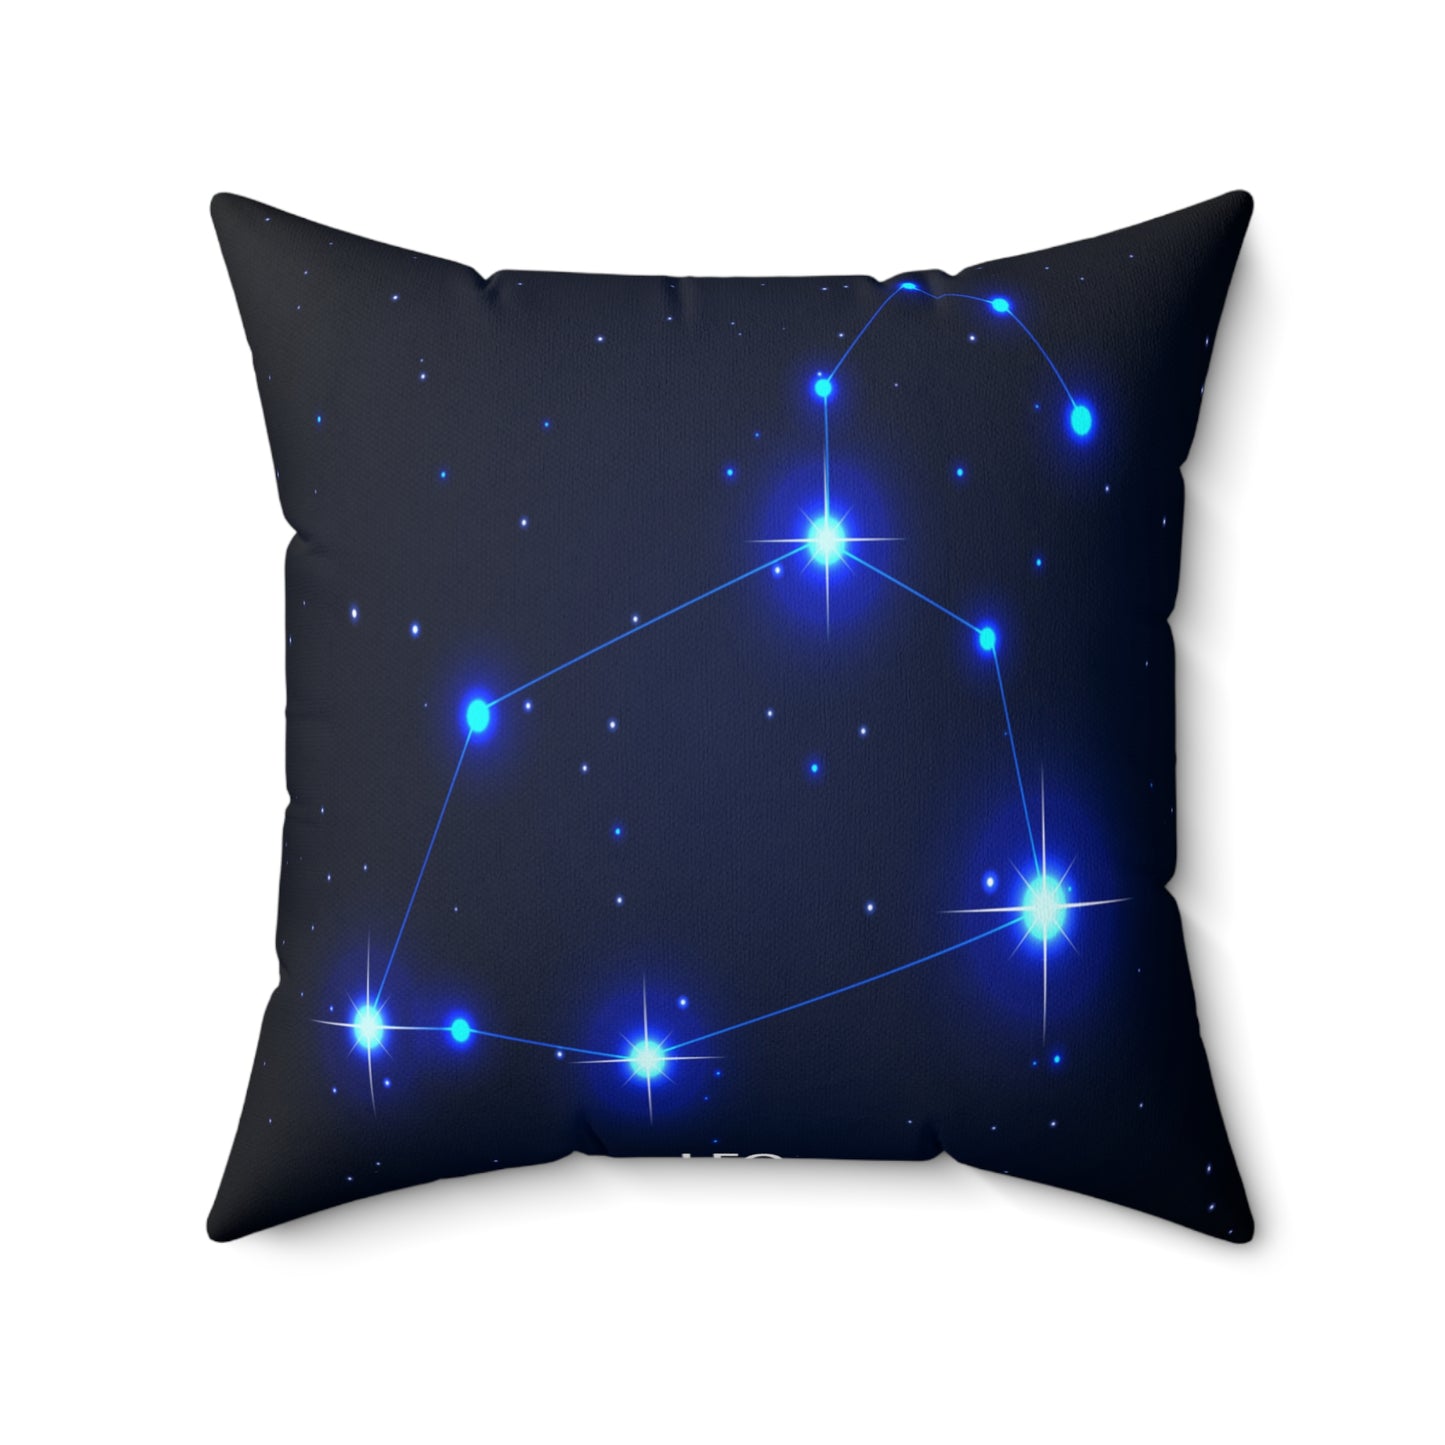 Leo constellation Zodiac Throw pillows